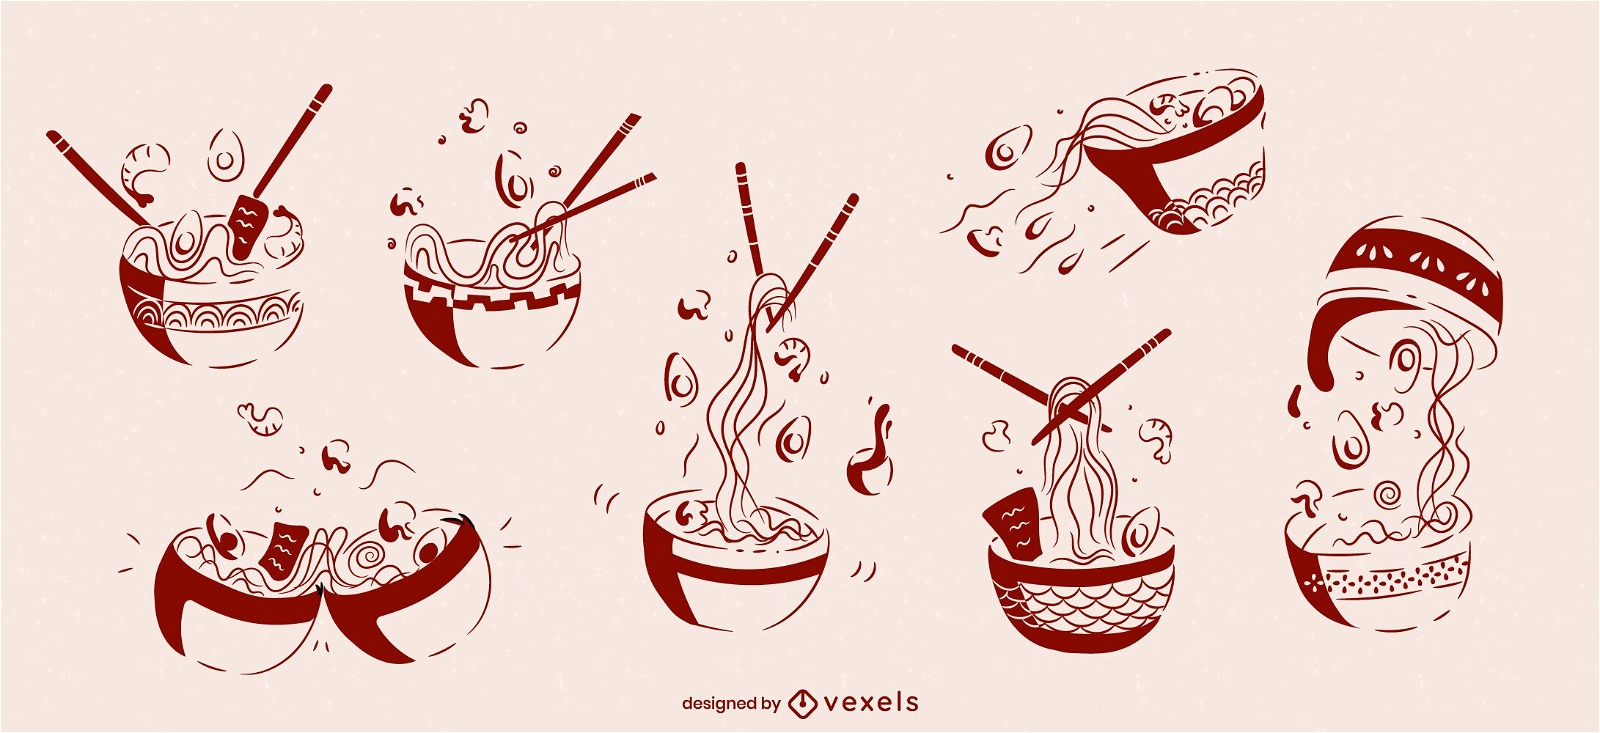 Conjunto de bocetos de comida japonesa de taz?n de ramen